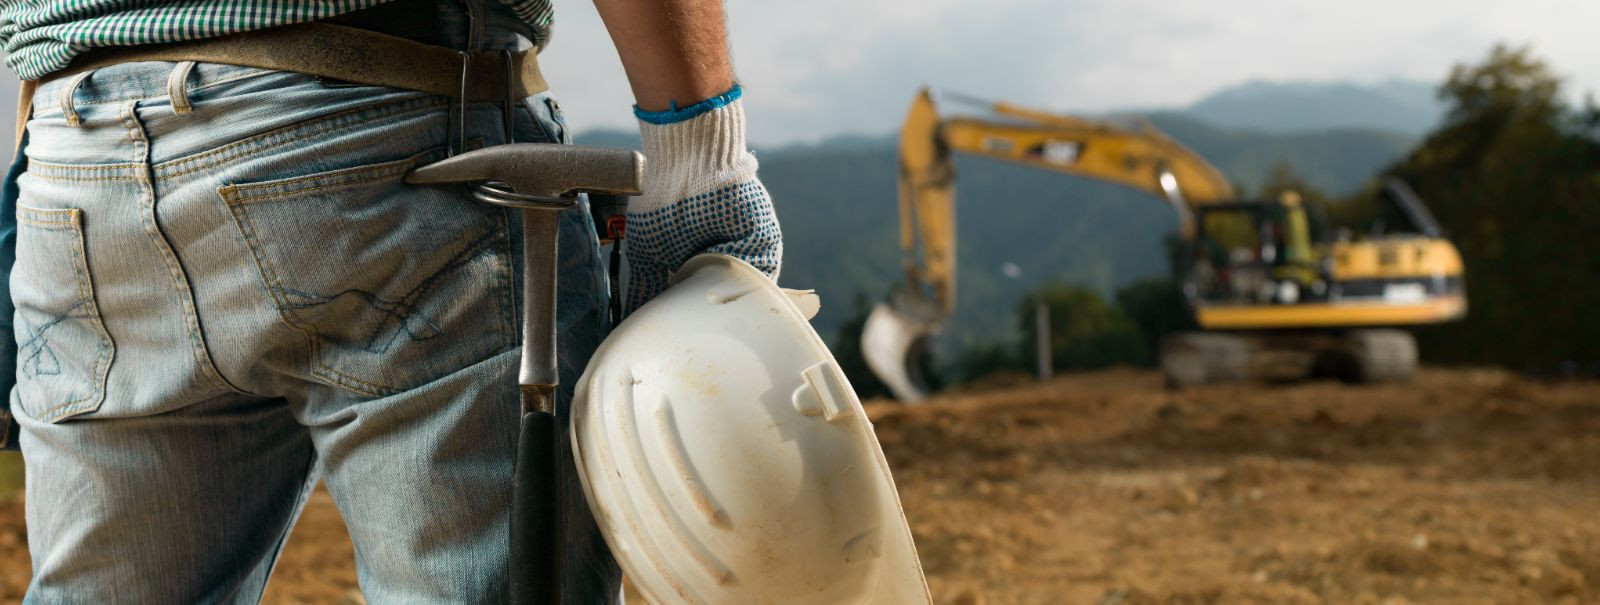 Tõhus kaevamine on iga eduka ehitusprojekti nurgakivi. See seab lava vundamendile ja tagab, et järgnevad ehitusetapid saavad toimuda viivitusteta. Linnakeskkonn